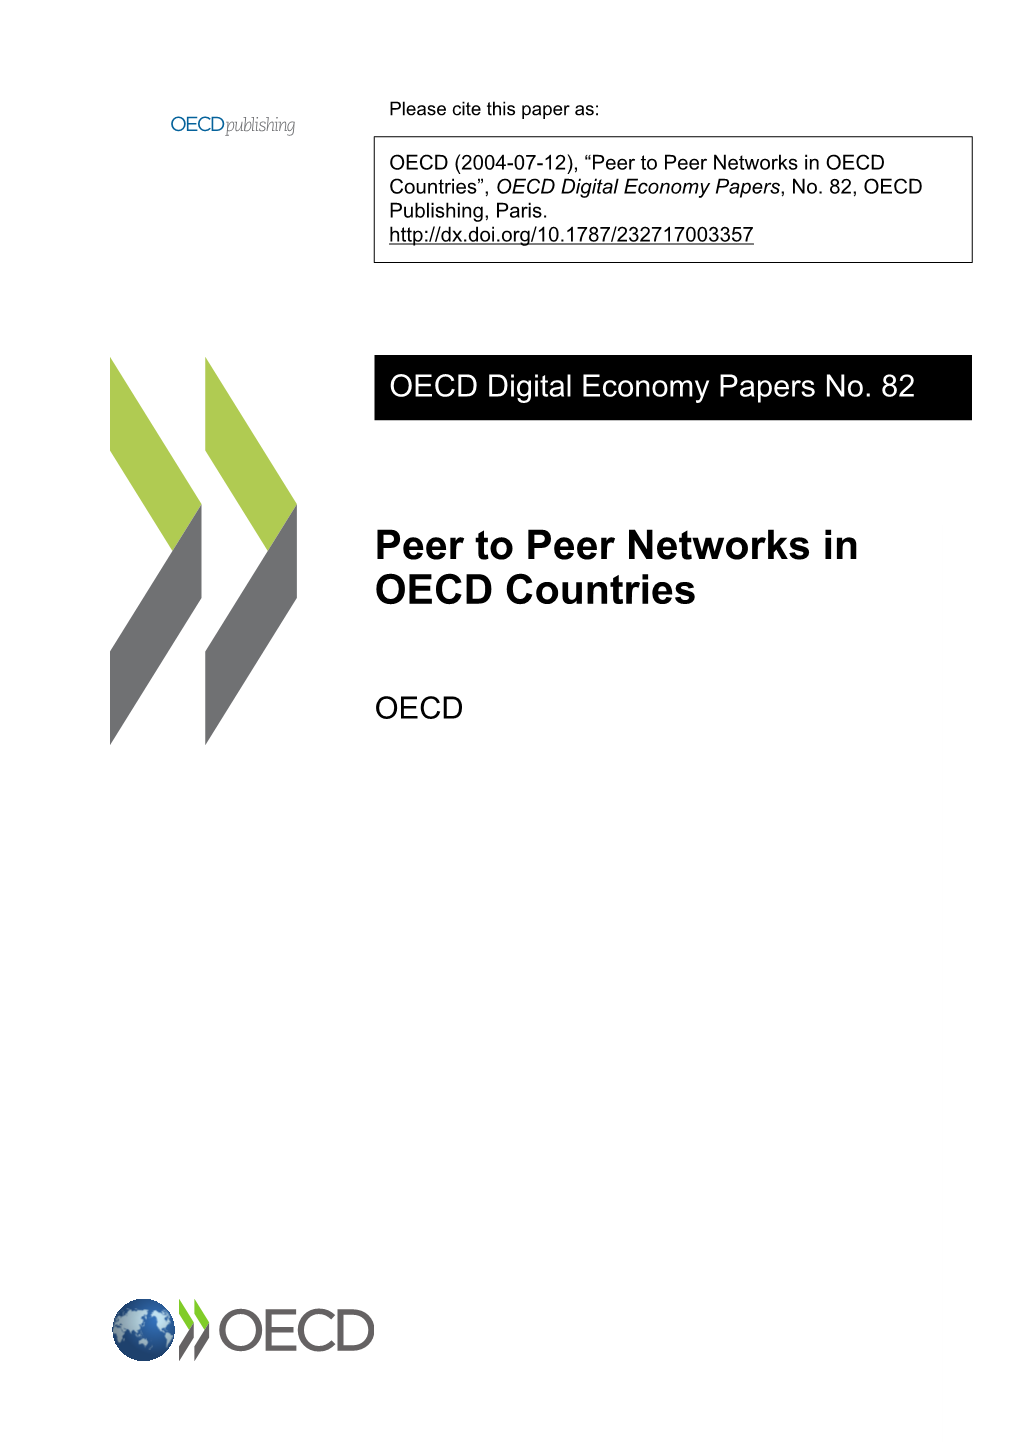 Peer to Peer Networks in OECD Countries”, OECD Digital Economy Papers, No